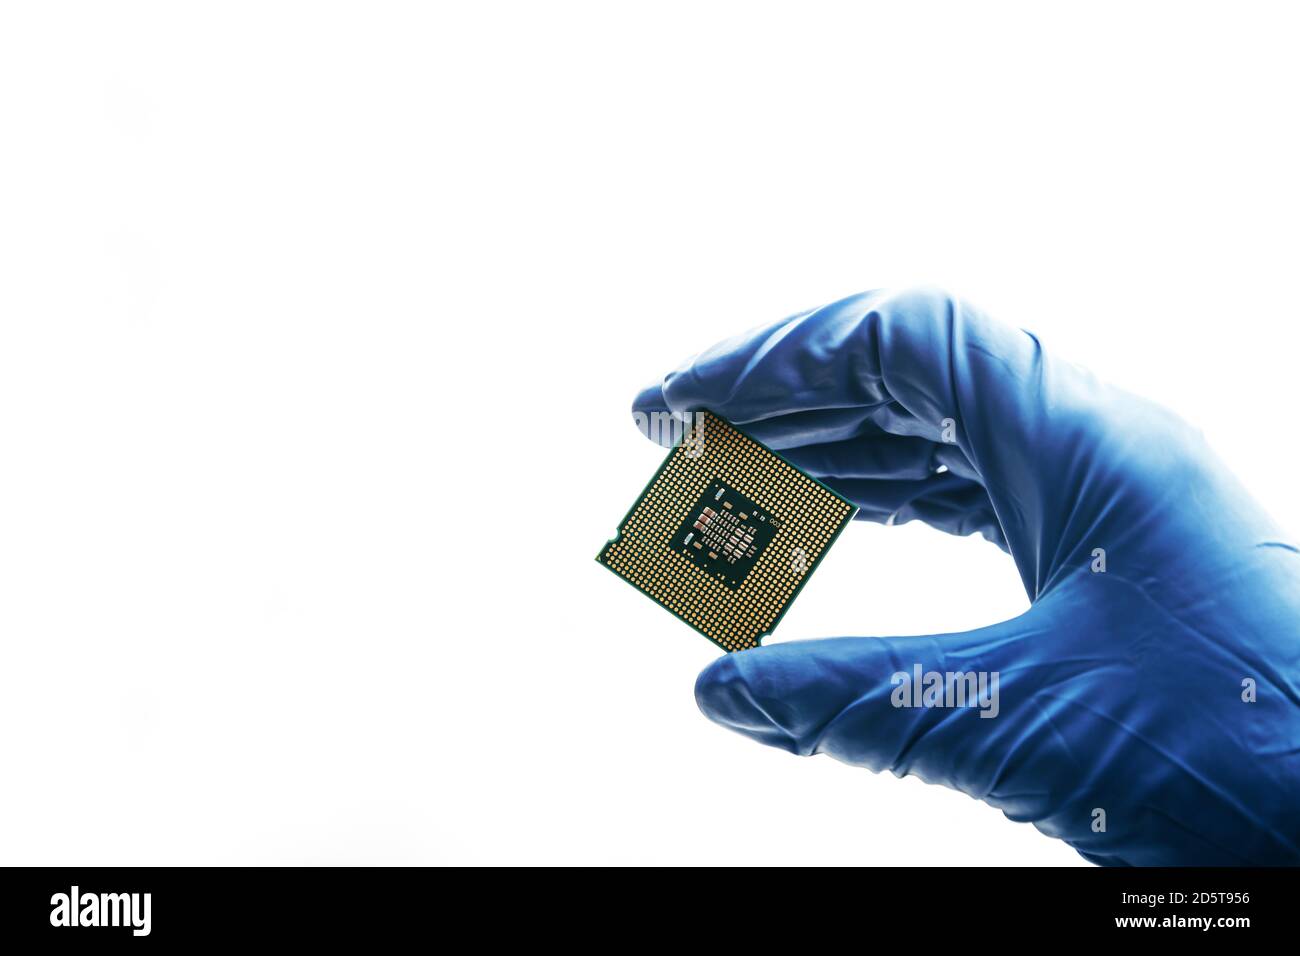 Nahaufnahme eines neuen Halbleiter-Mikrochips in der Hand eines Informatikers. Moderne Technologie- und Hardwareentwicklung Stockfoto